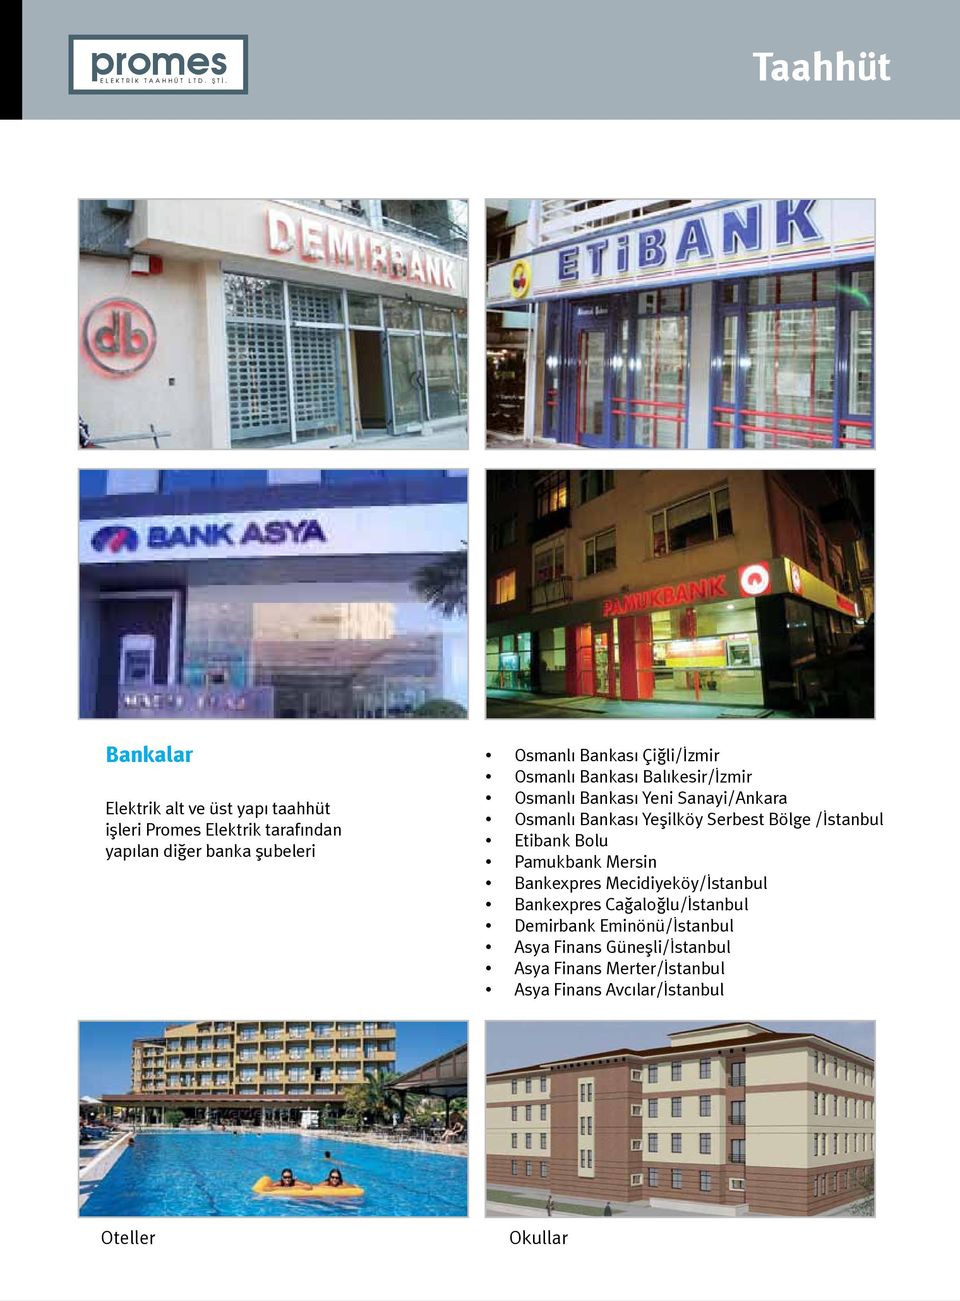 Yeşilköy Serbest Bölge /İstanbul Etibank Bolu Pamukbank Mersin Bankexpres Mecidiyeköy/İstanbul Bankexpres